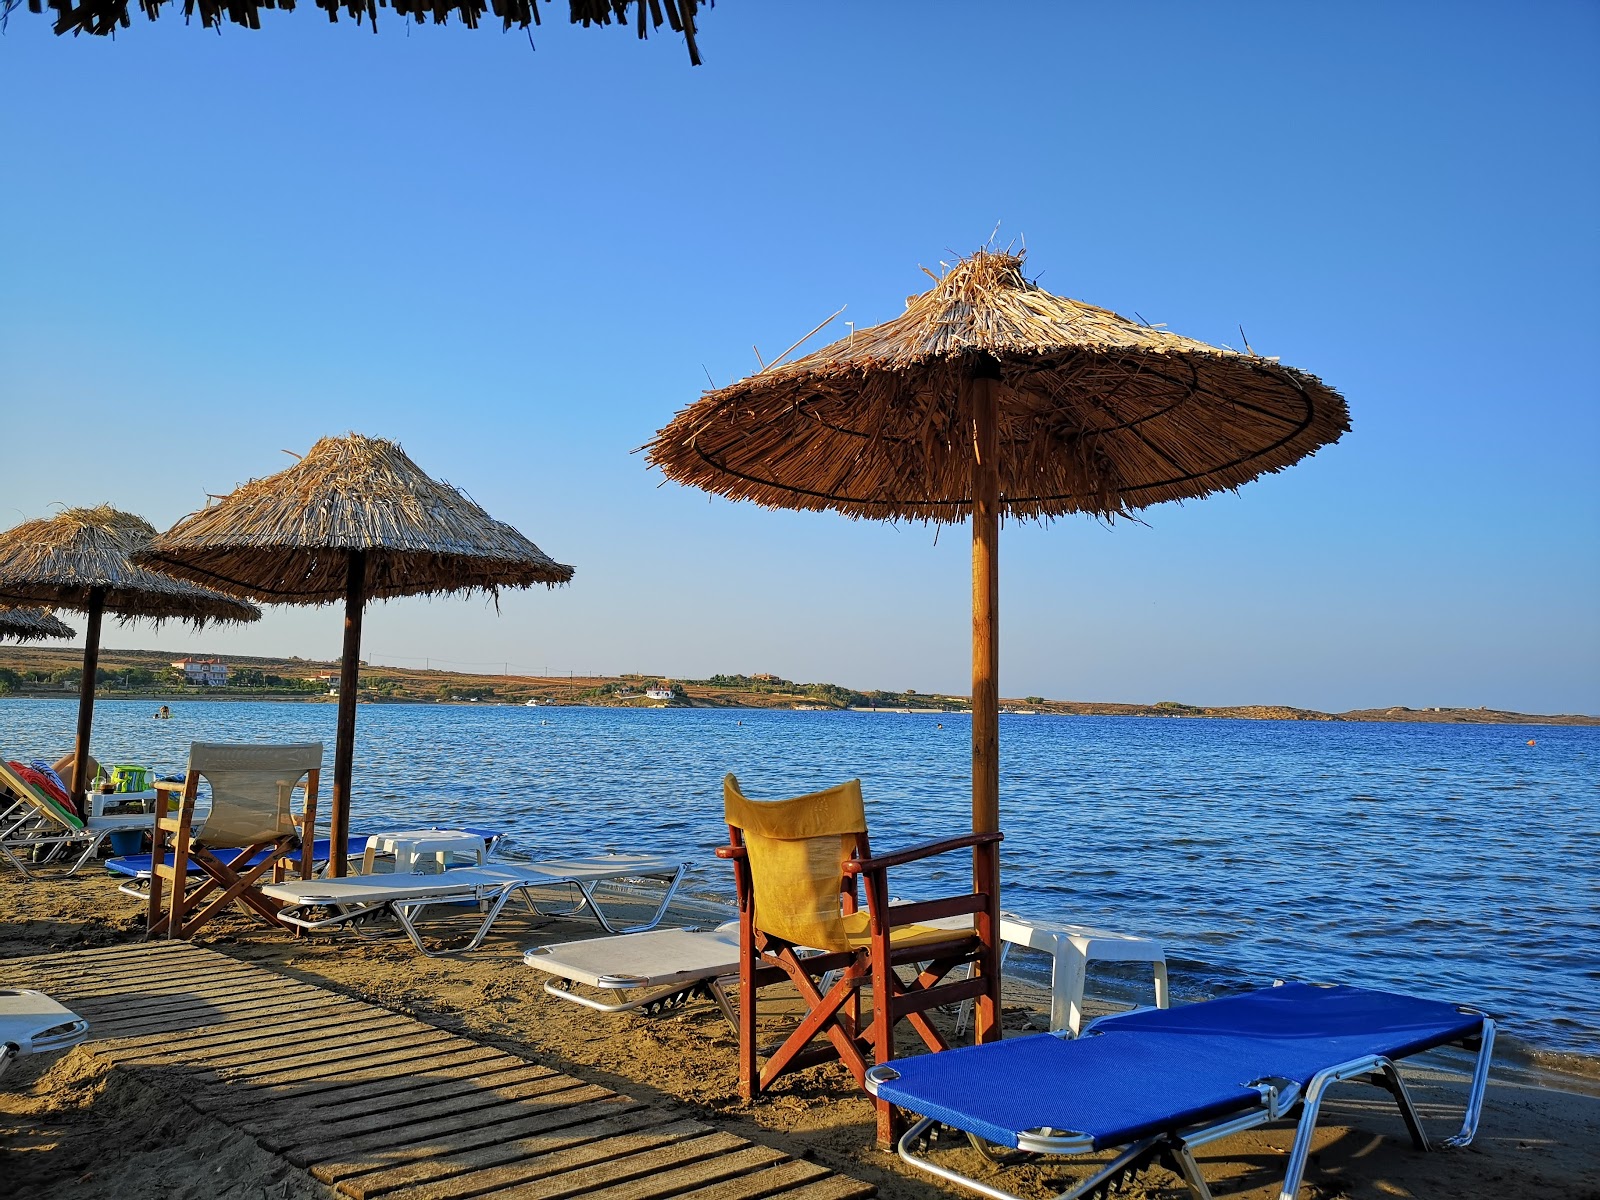 Fotografie cu Kotsinas beach - locul popular printre cunoscătorii de relaxare